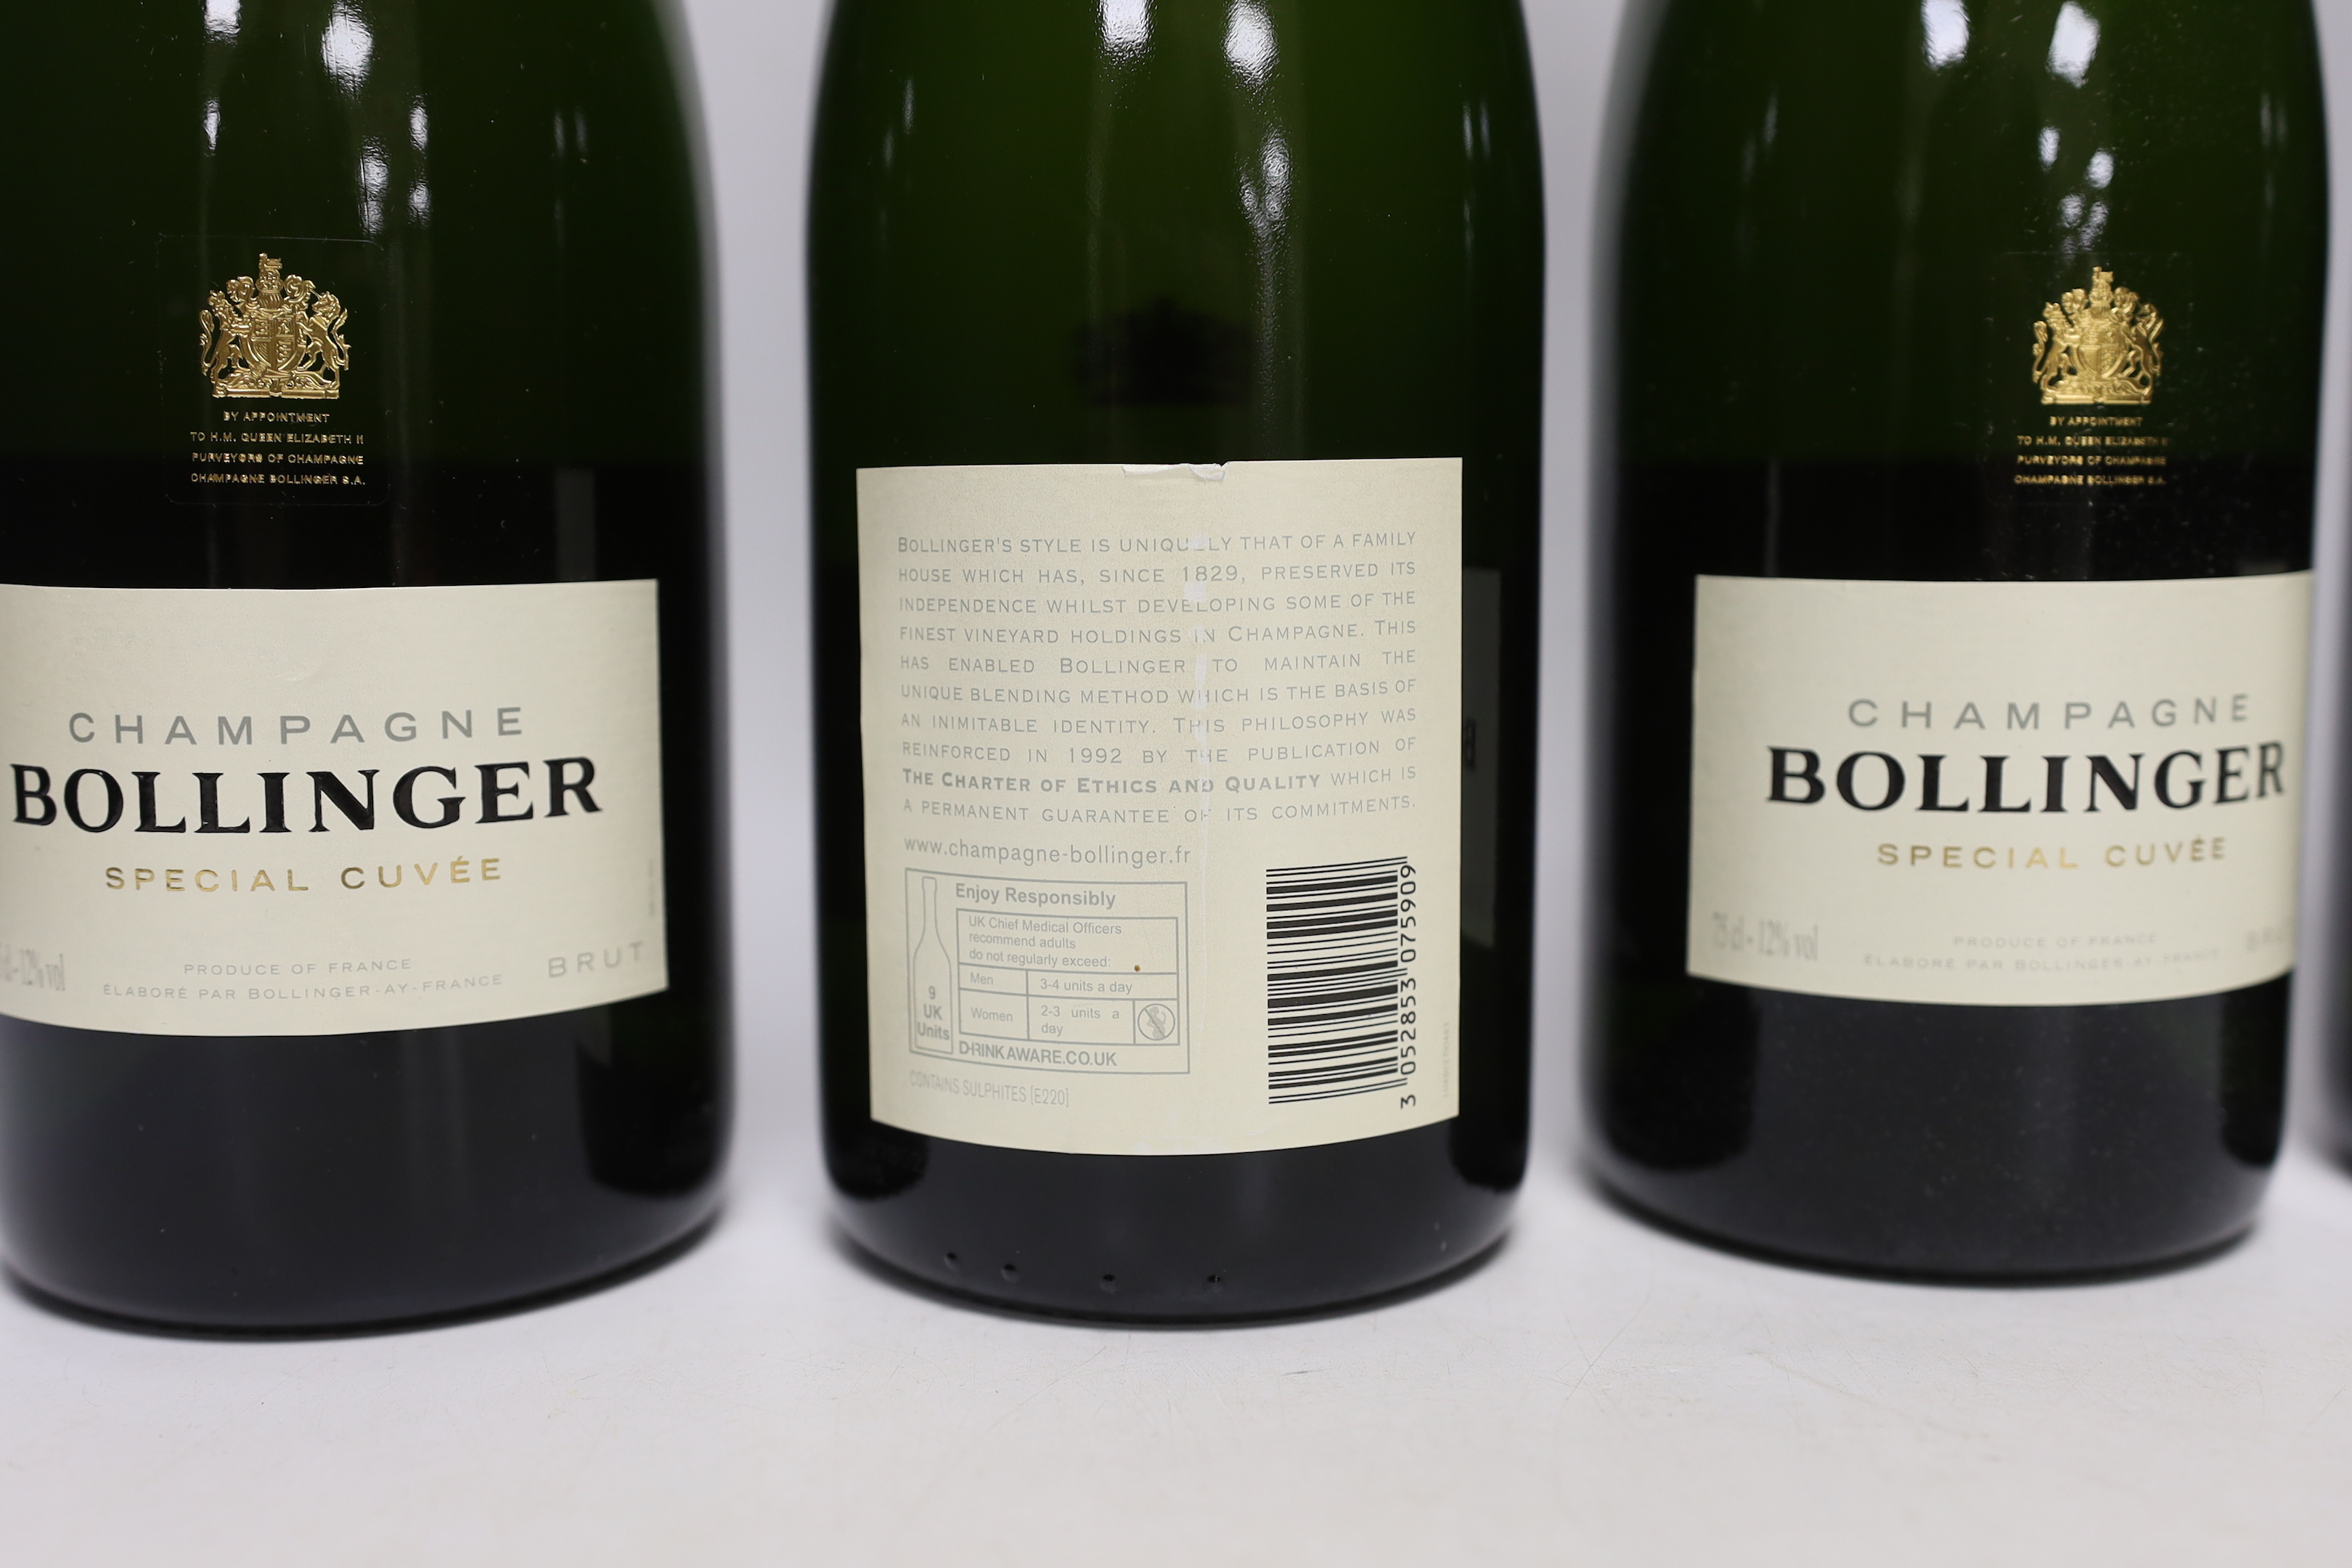 Four bottles of Bollinger Champagne